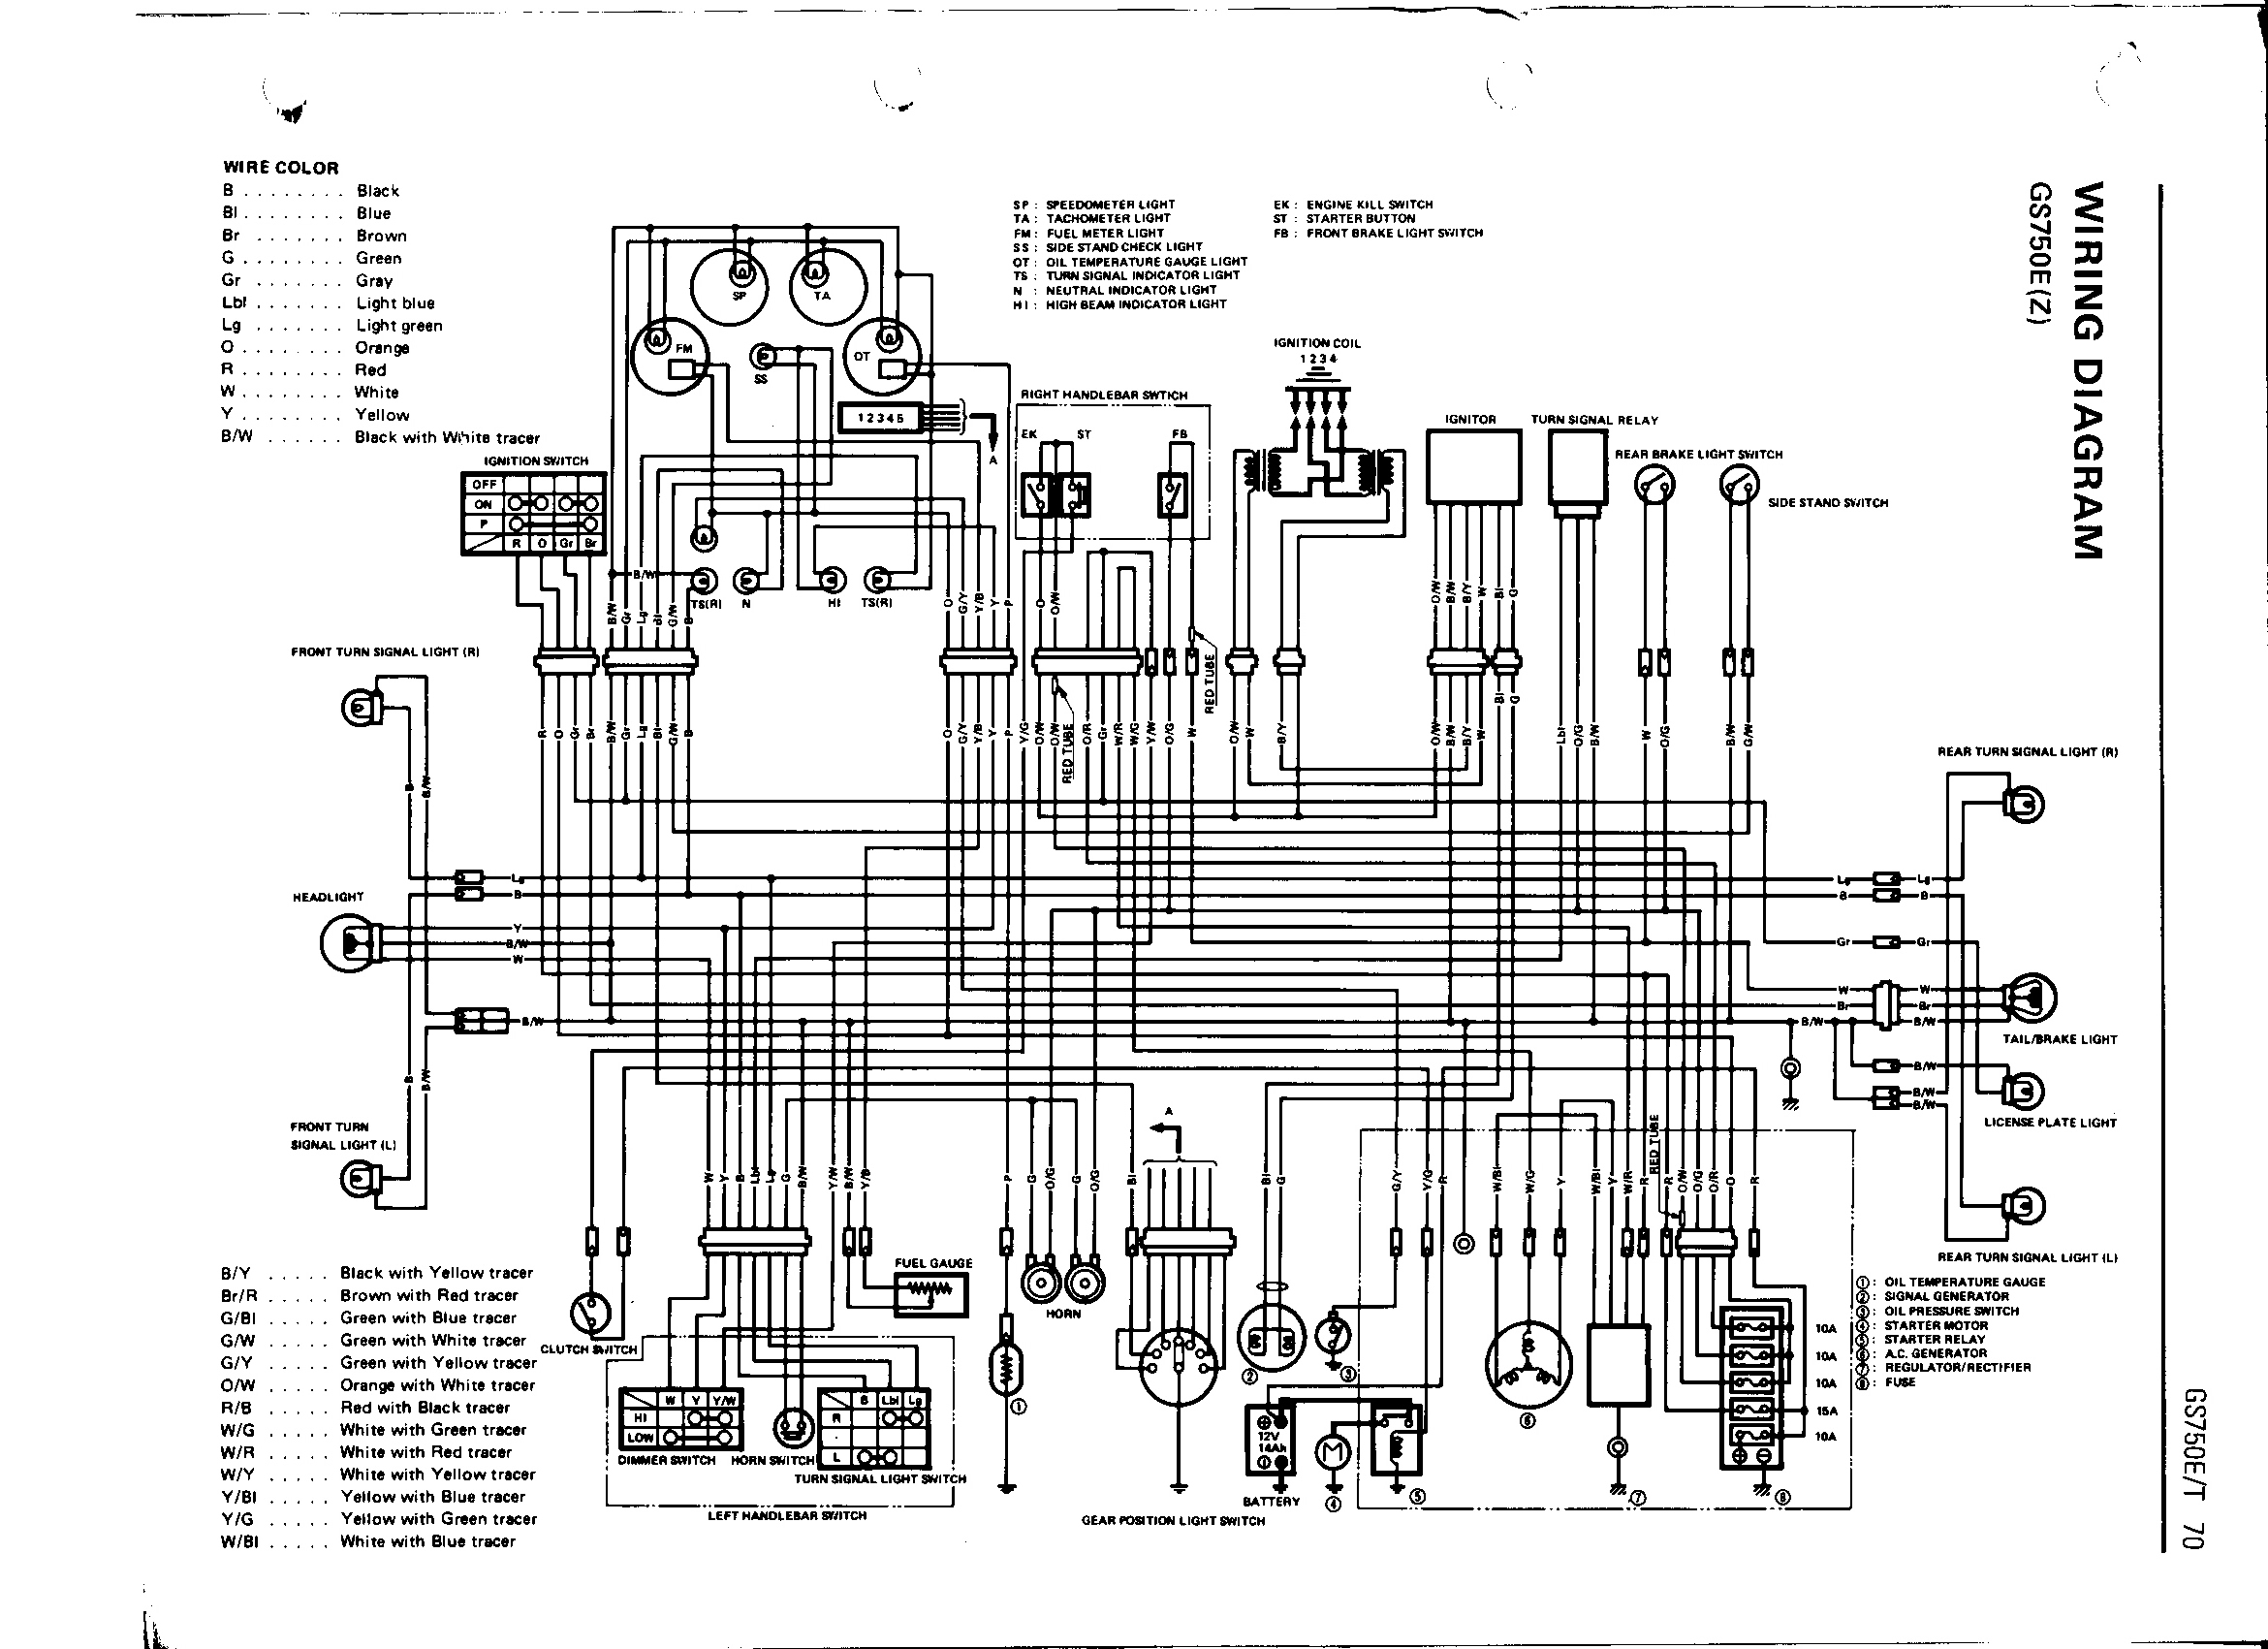 1983 Suzuki Gs550L Wiring Diagram from schematron.org